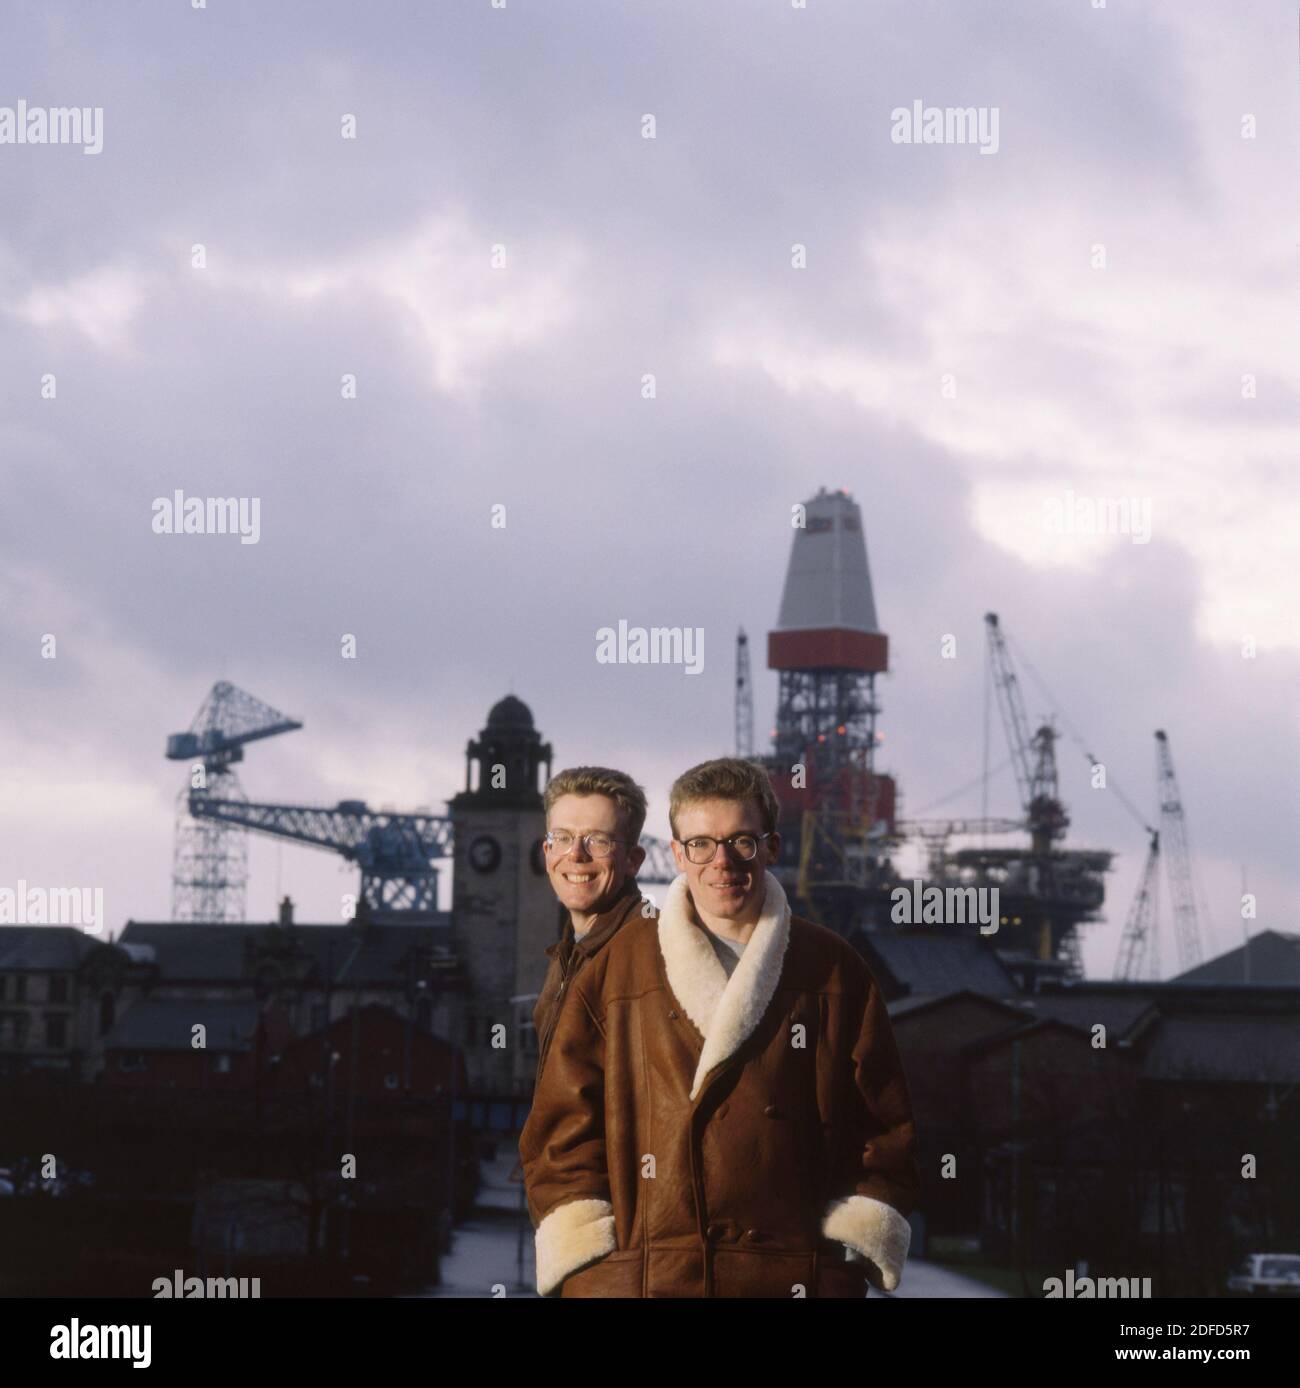 Ritratto del duo rock scozzese The Proclaimers vicino ai cantieri navali Clyde, Glasgow, Scozia circa 1993 Foto Stock